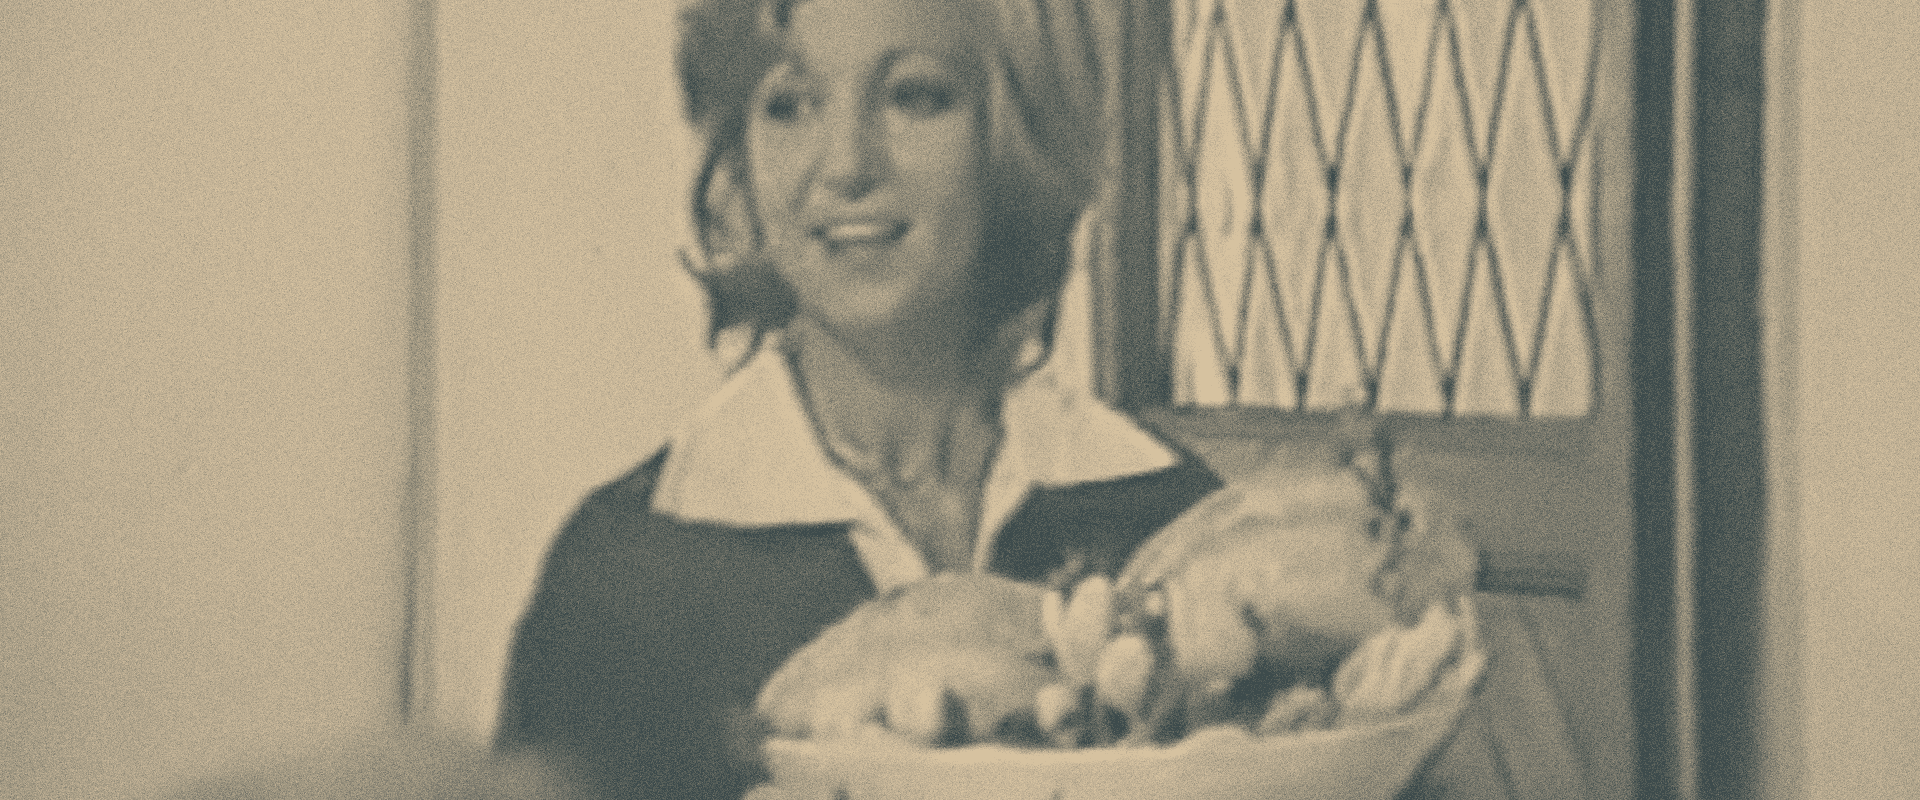 Frame dello spot pubblicitario tv del 1970 del pollo AIA, Agricola Italiana Alimentare